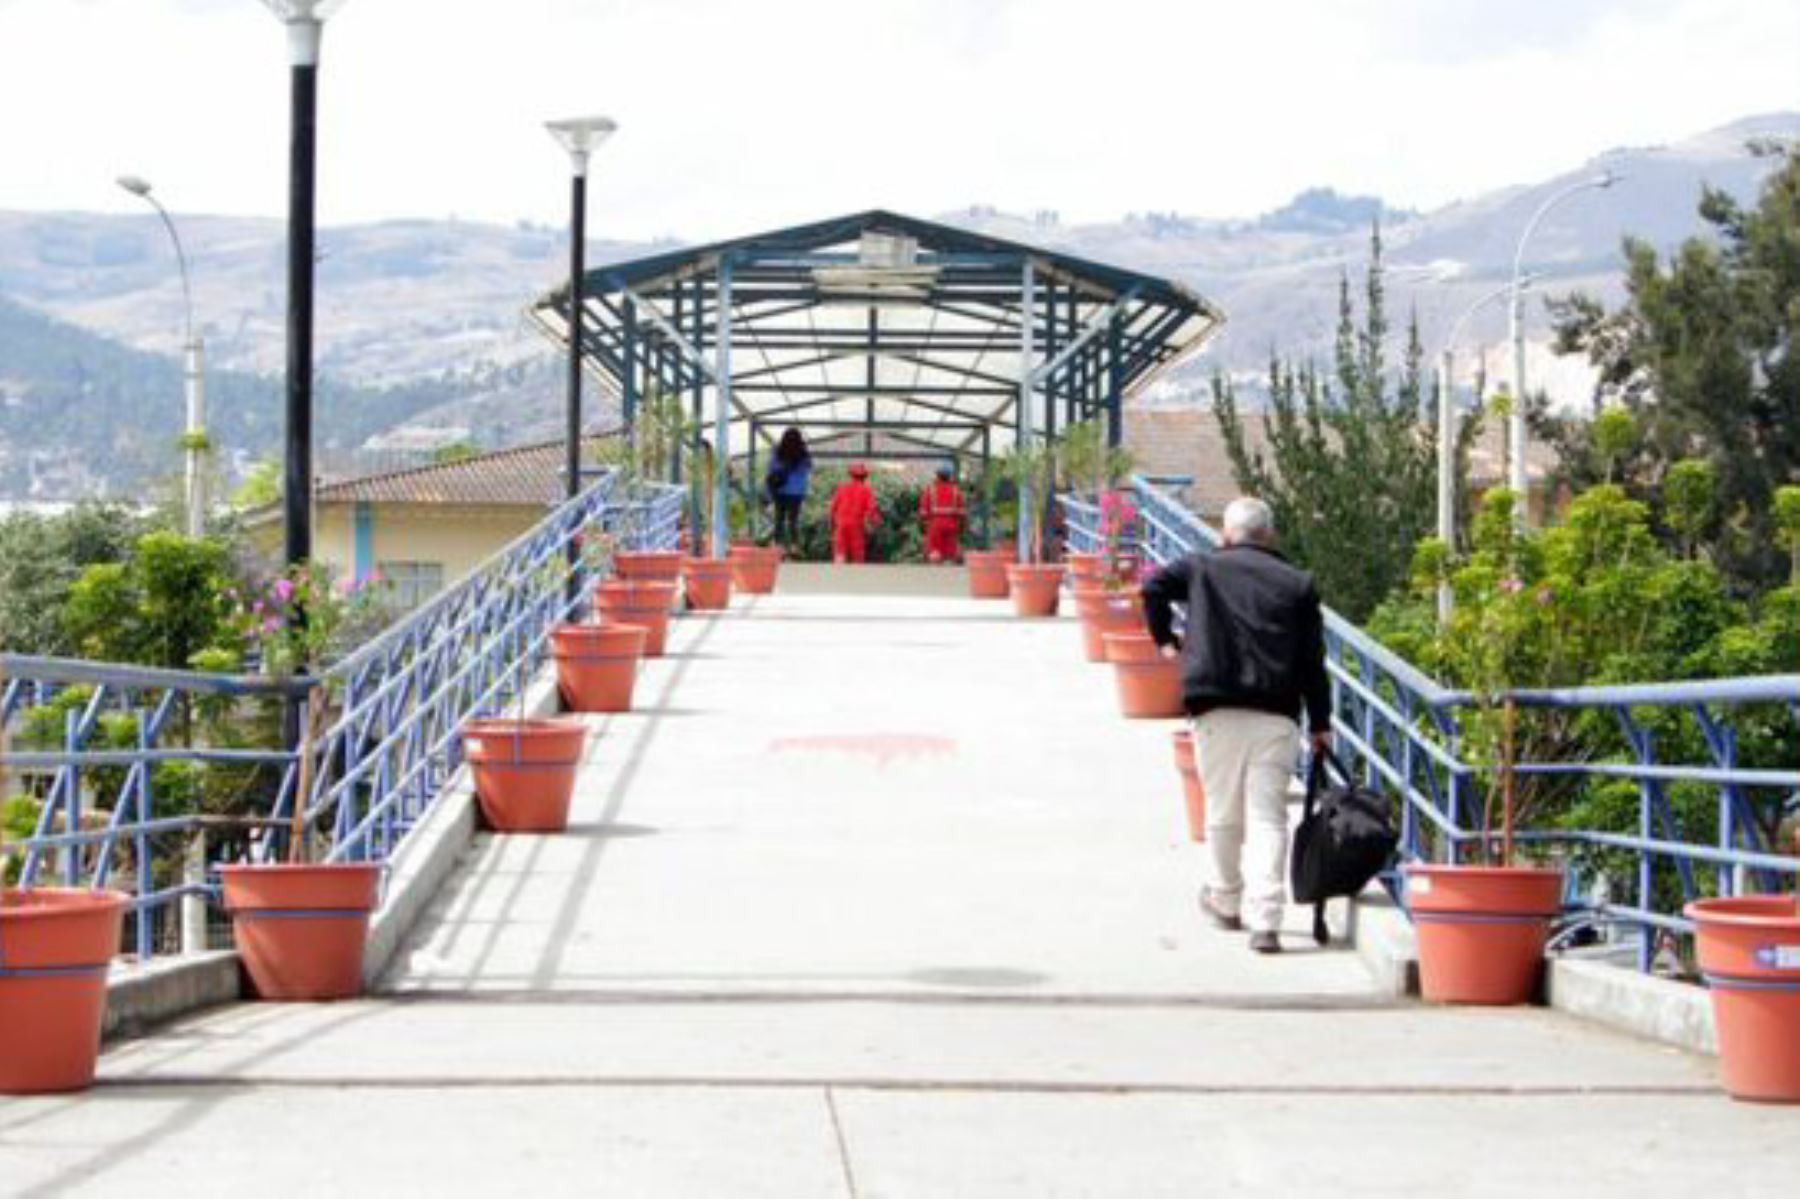 La municipalidad provincial de Cajamarca colocó más de 100 maceteros ecológicos en todo el corredor aéreo, para mostrar un entorno paisajístico natural.